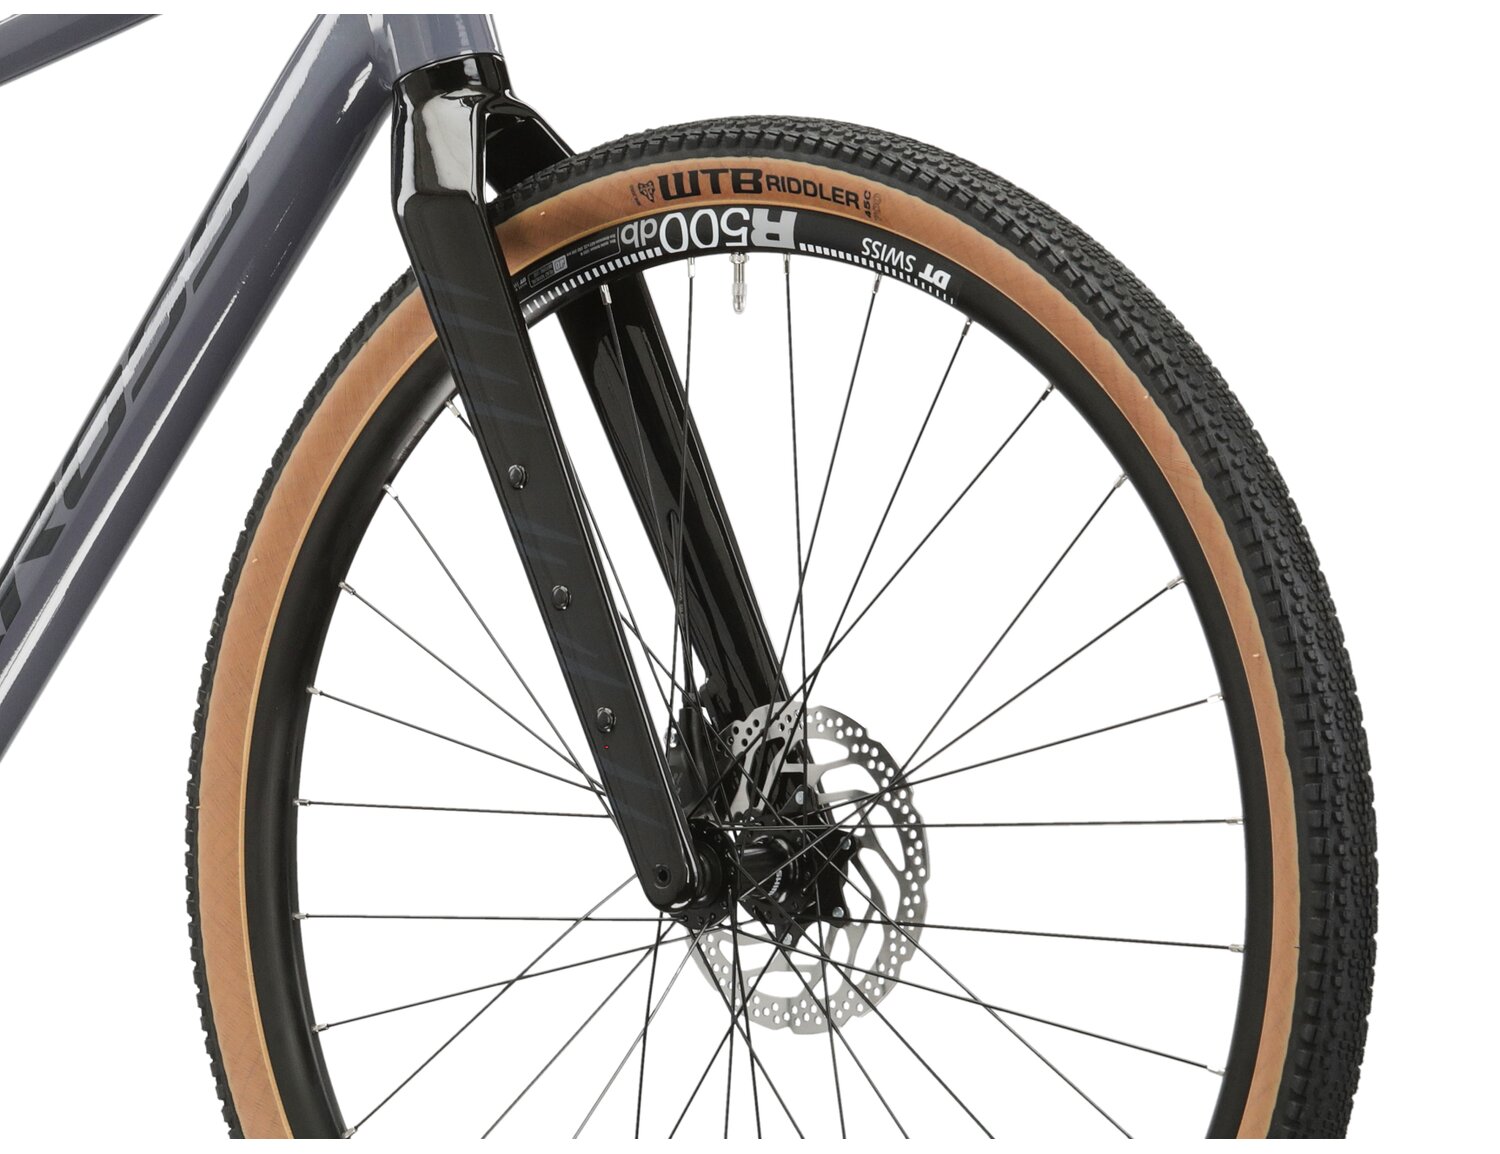  Sztywny carbonowy widelec oraz opony WTB Riddler o szerokośći 45mm w rowerze gravelowym KROSS Esker 5.0 